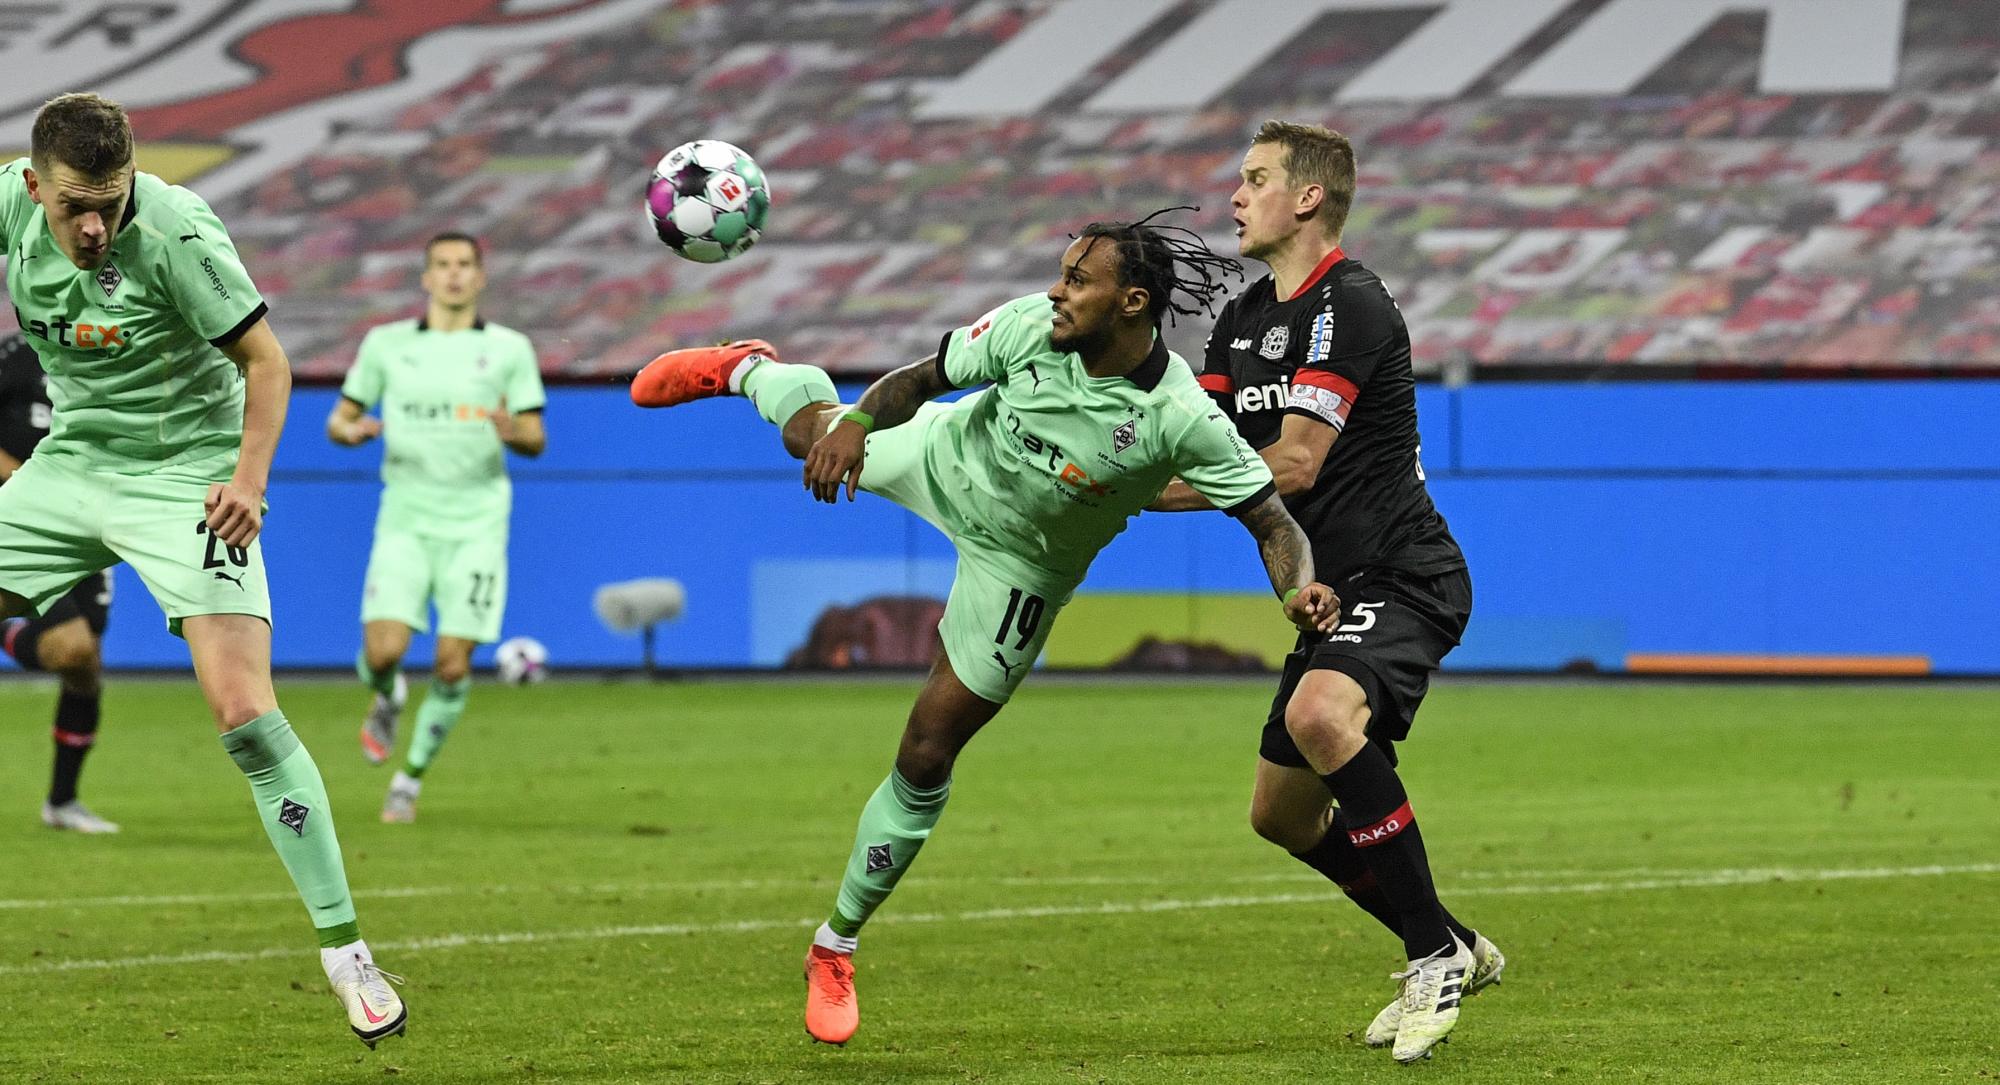 Valentino Lázaro anota un gol acrobático en el duelo que enfrentó al Borussia Moenchengladbach y el Bayer Leverkusen (AP Photo/Martin Meissner)